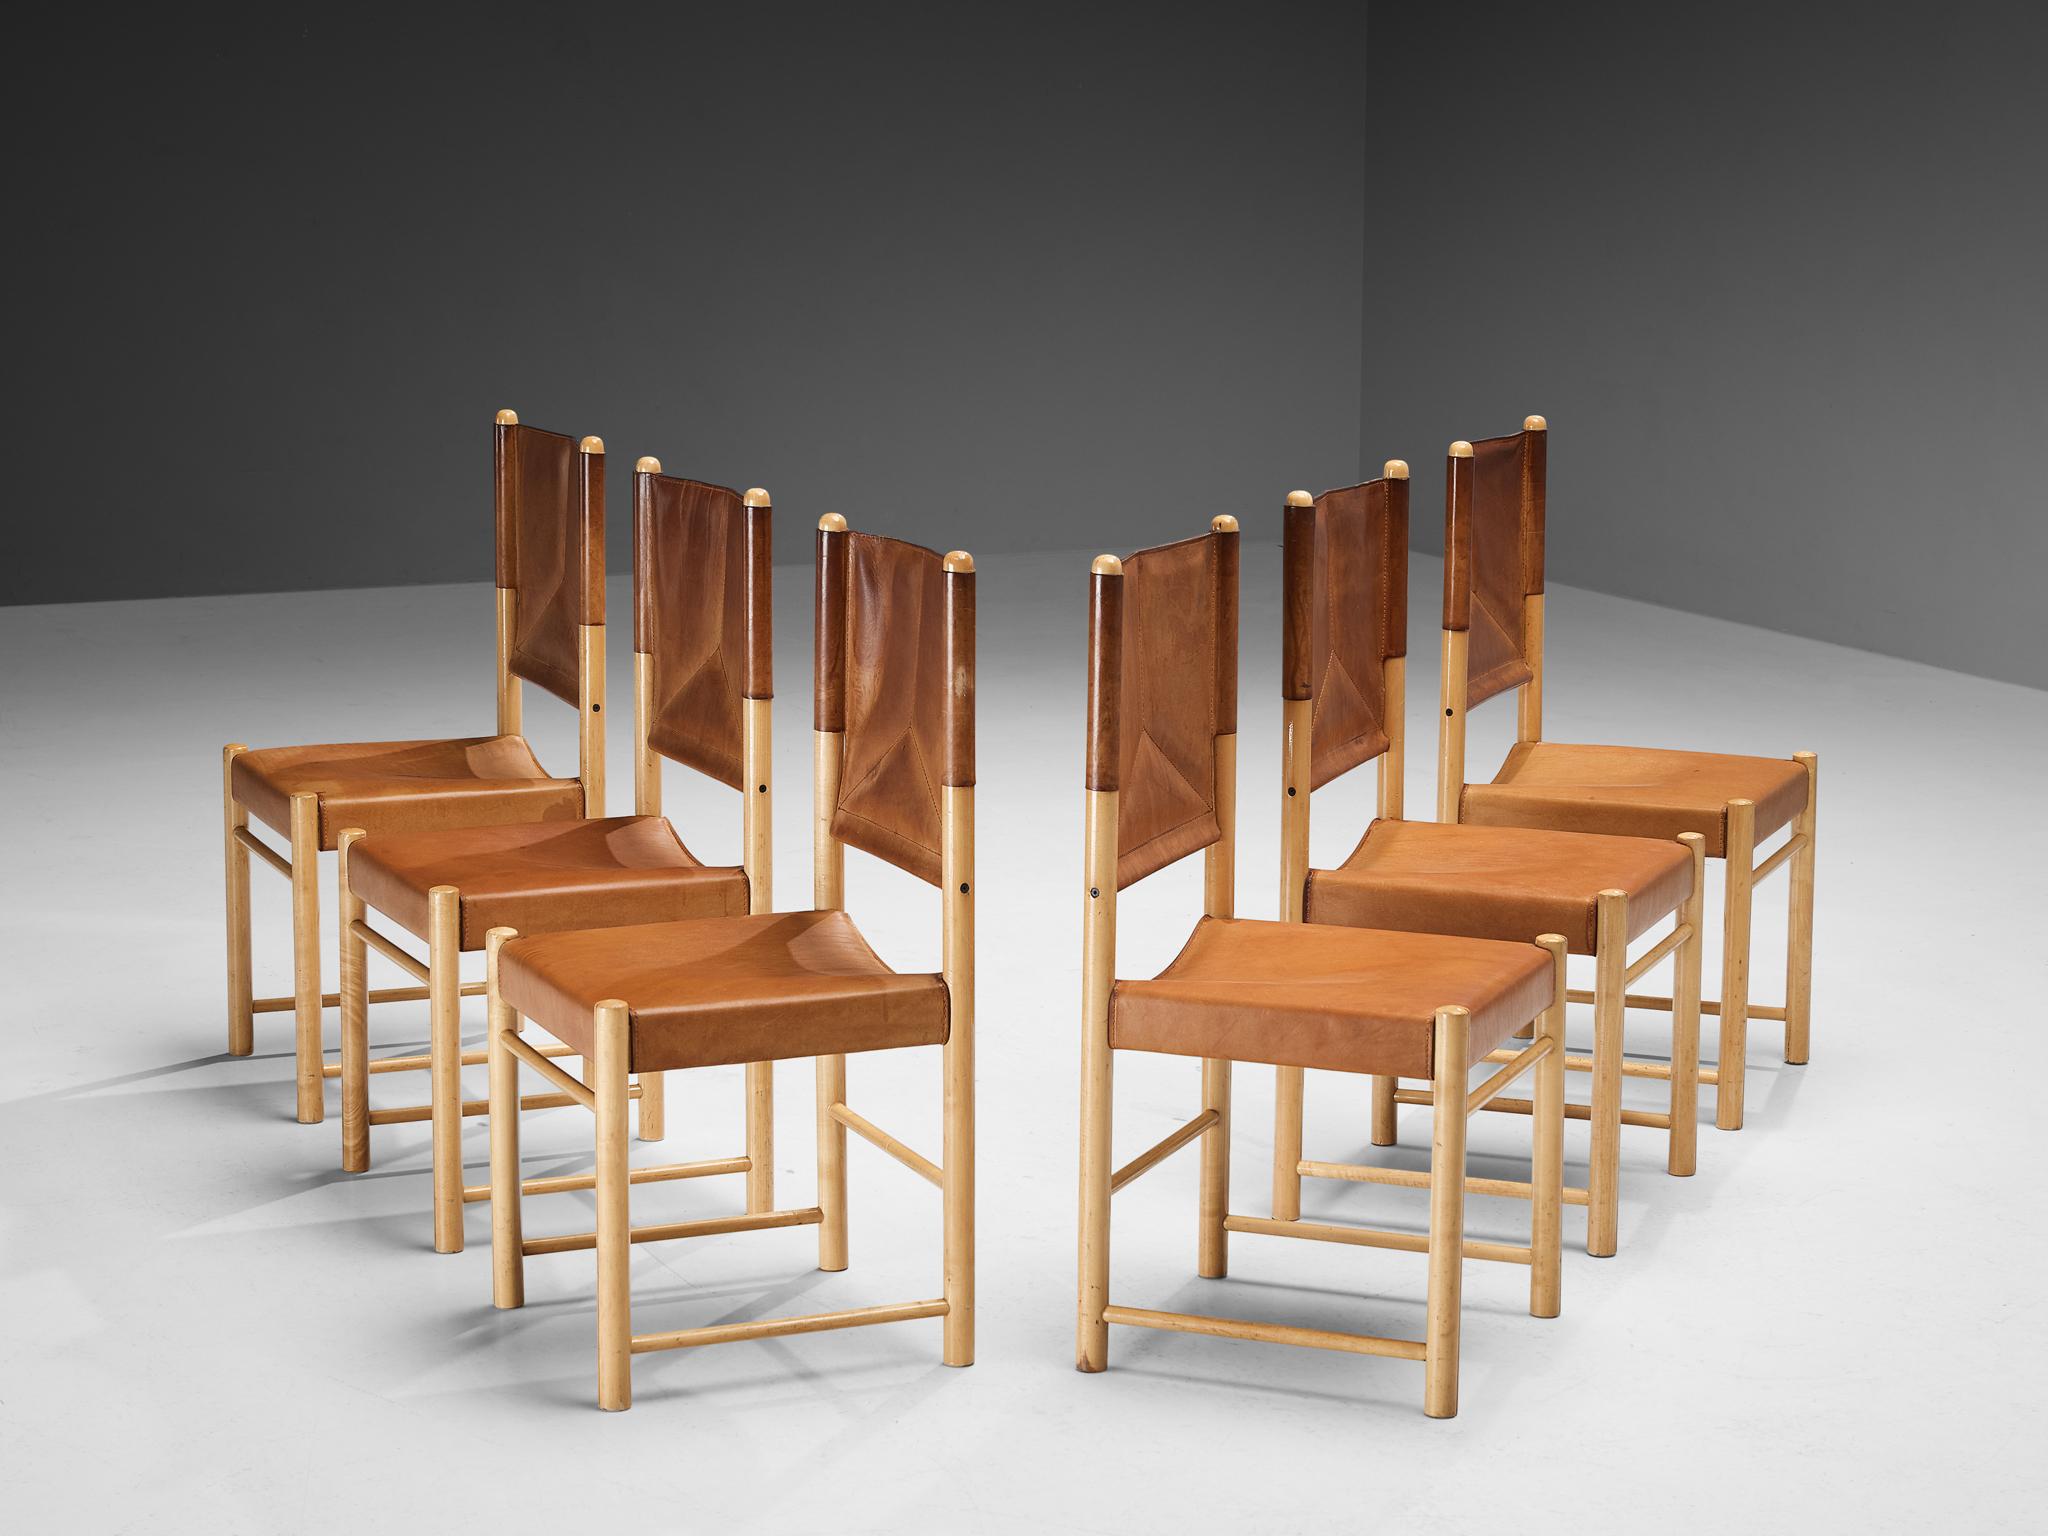 Ensemble de six chaises de salle à manger, hêtre, cuir, Italie, années 1970.

Un ensemble de chaises délicates, bien proportionnées, qui rehaussent la salle à manger d'une manière vigoureuse et forte. Le cadre en bois est composé de poutres